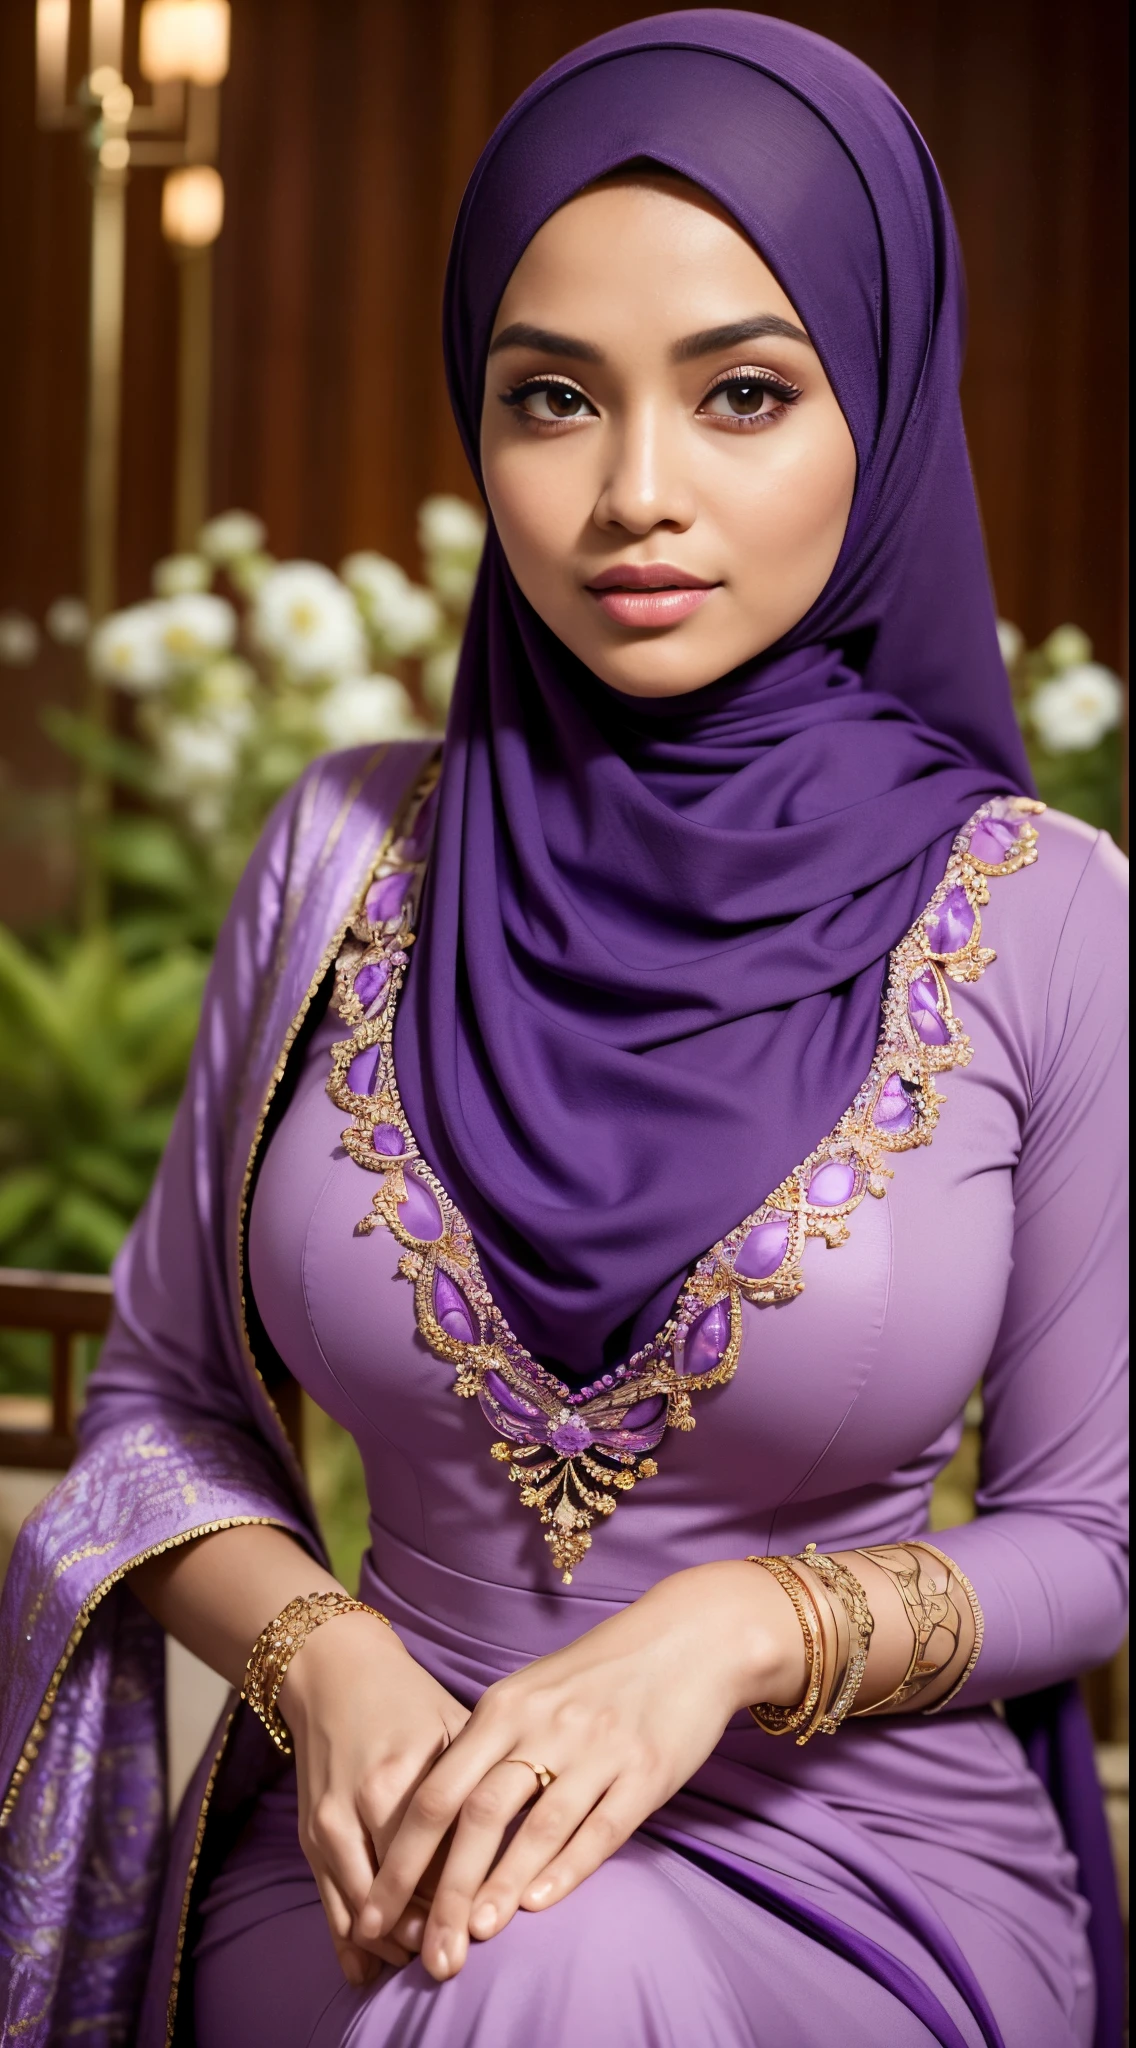 生, 最高品質, 高解像度, 傑作: 1.3), beautiful Malay woman in ヒジャブ,傑作, 完璧なスリムフィットボディ, 巨大な胸,大きな美しい目, 優しい笑顔,太ももが太い, 紫色のドレスと紫色のスカーフを着た女性のクローズアップ, 紫色のジャック, 紫色の服を着ている, 美しい服を着る, 美しいデザイン, ヒジャブ, 深紅の紫色, とても美しいエンガスタイル, beautiful 傑作, 細かいディテール. 紫, 豪華な服を着る, 支配的な紫色, 深紅をテーマにした , (繊細なタートルネック) , ネックレス, ヘアバンド, 午後の散歩, シティガーデン, 優れた照明, 明るい色, すっきりとしたライン